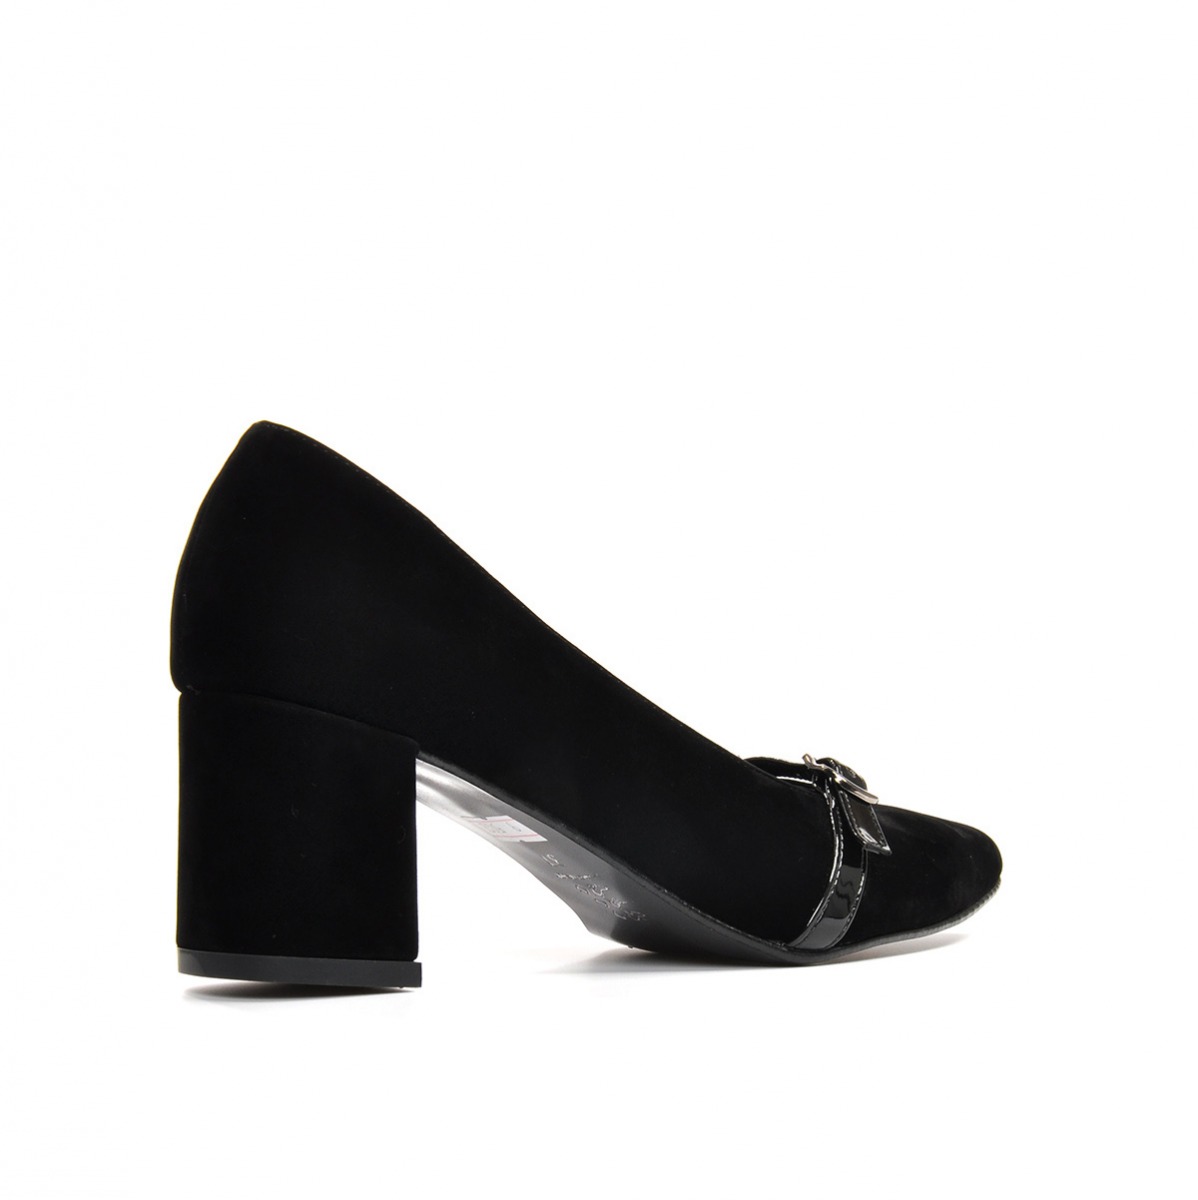 Flo Kadın  Siyah-Süet Klasik Topuklu Ayakkabı VZN19-110K. 5